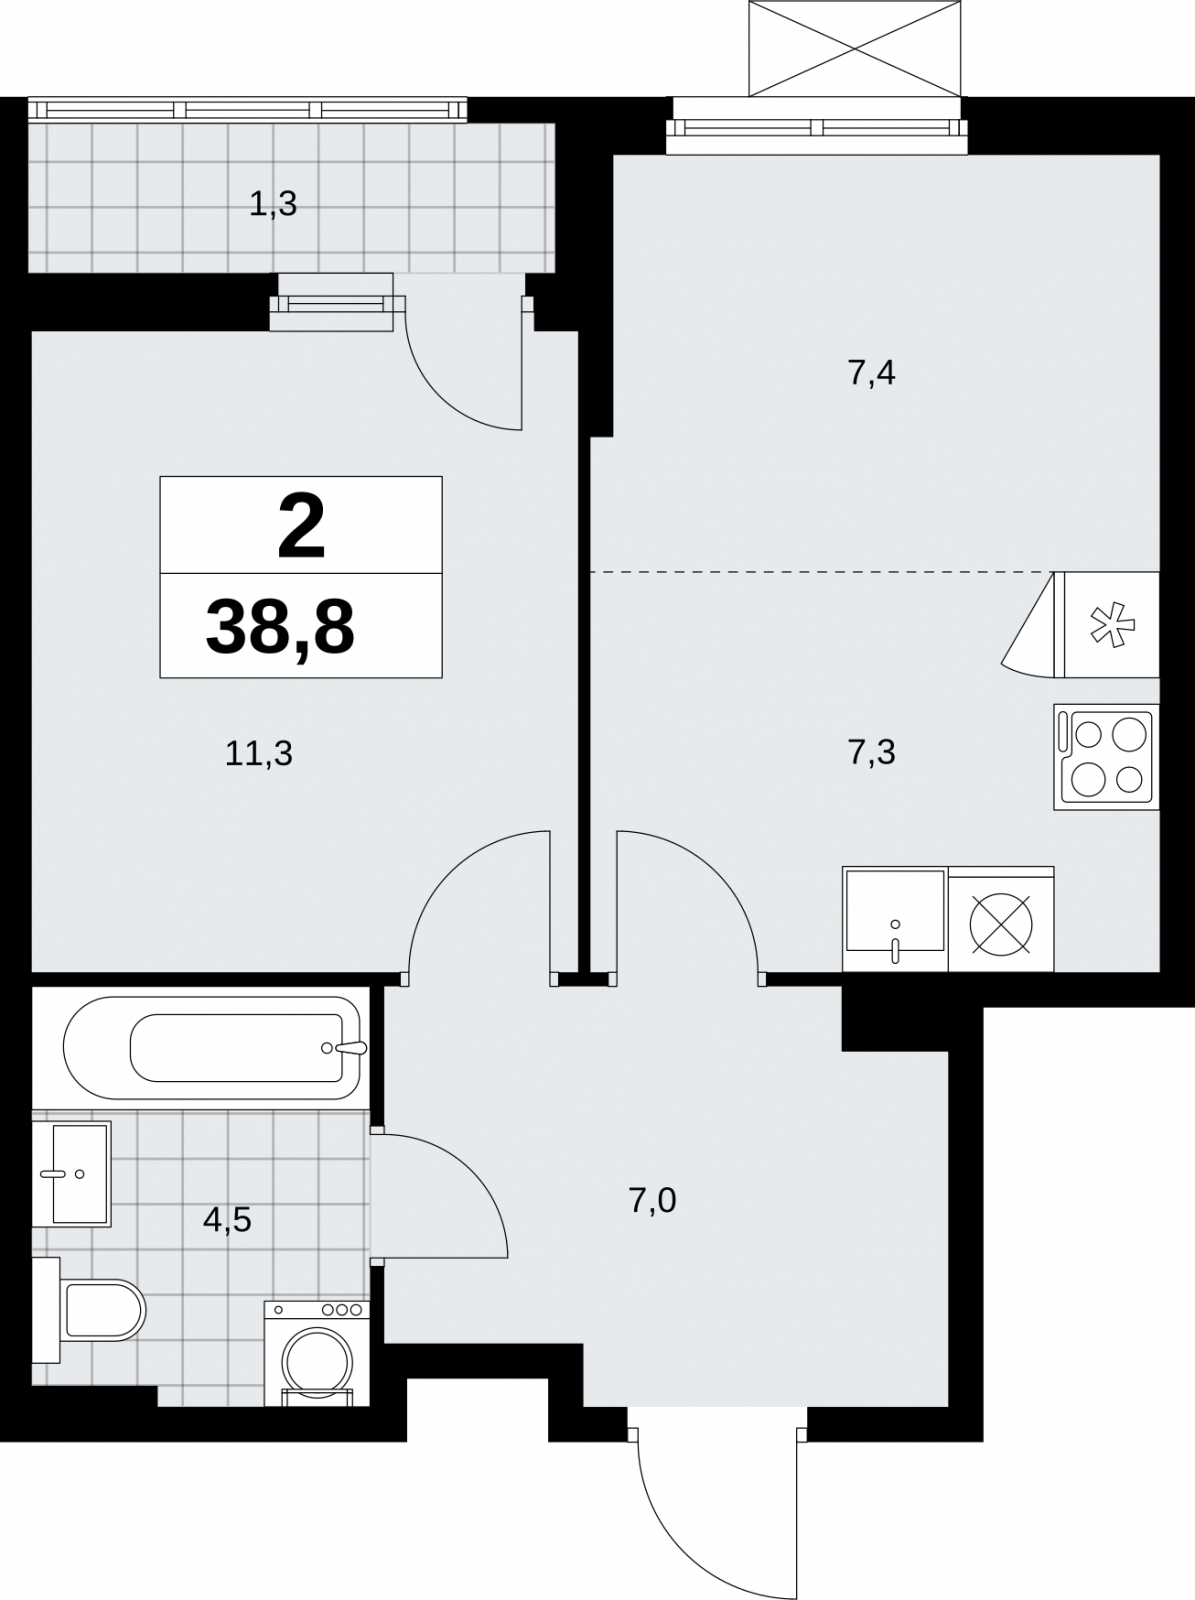 Продается двухкомнатная квартира в новом жилом комплексе, метро рядом